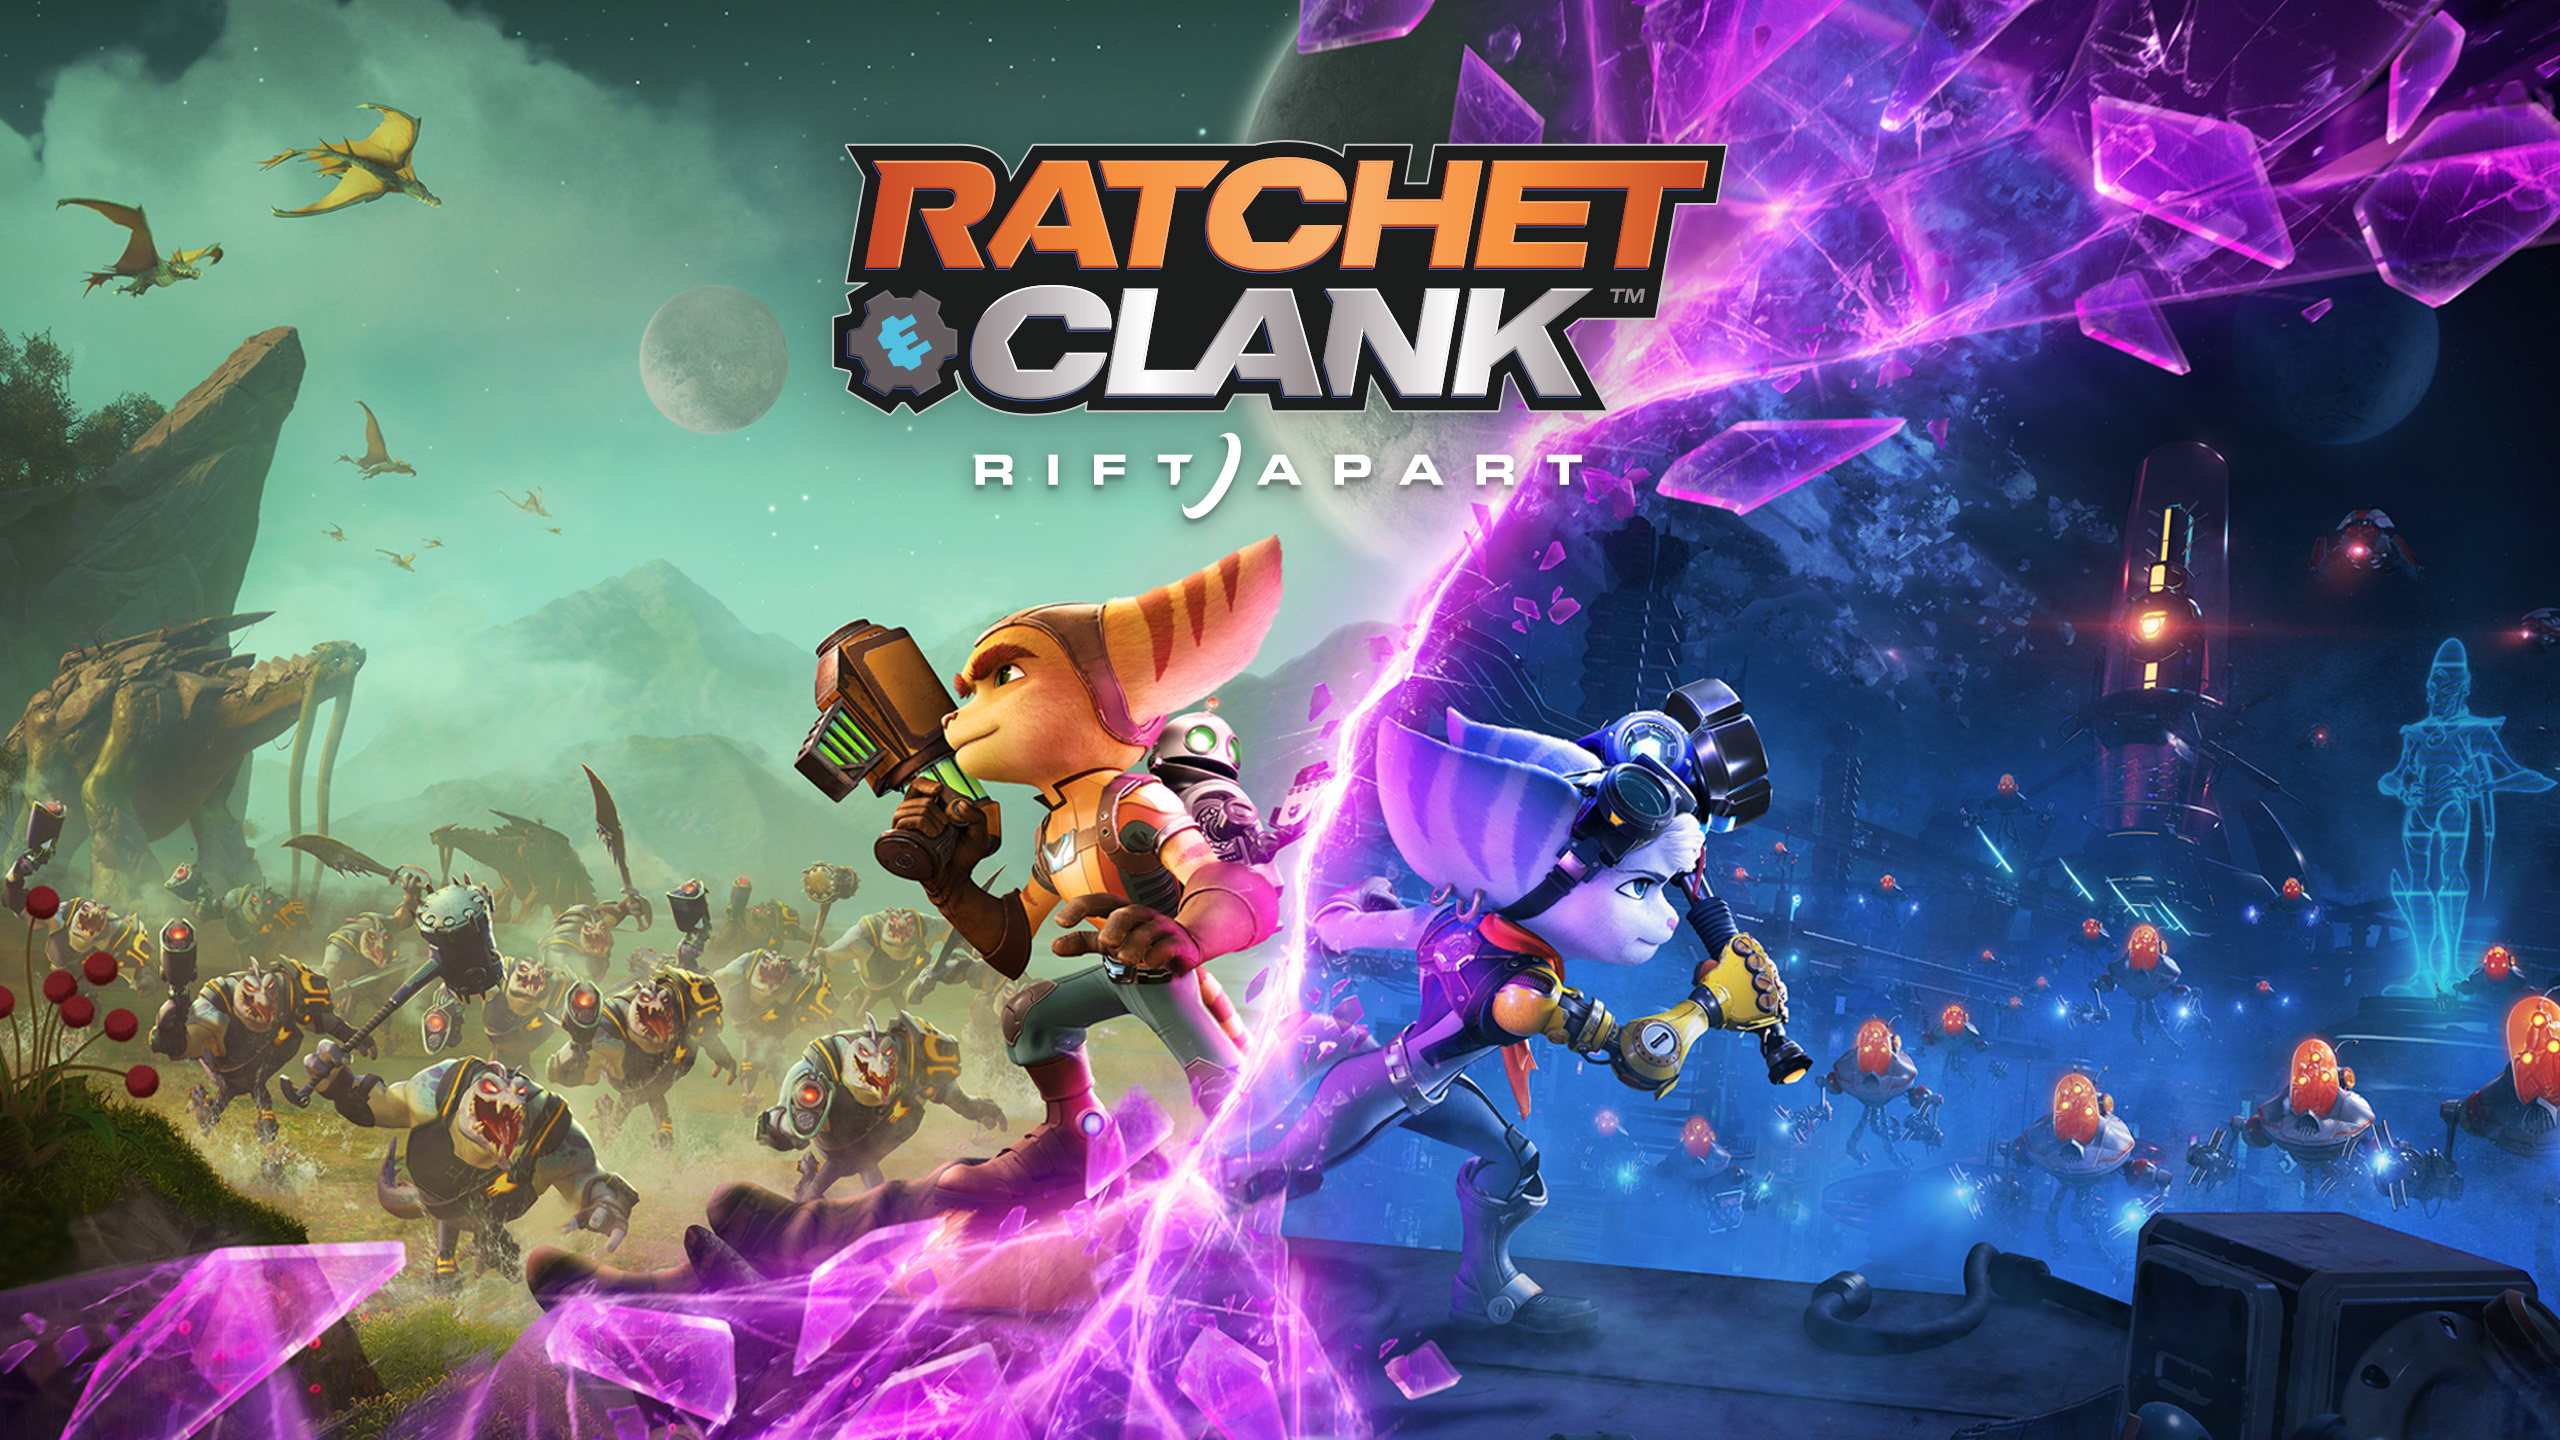 Ratchet & Clank: Rift Apart ИГРОМУЛЬФИЛЬМ ►#10 Прохождение без комментариев (Русская озвучка)